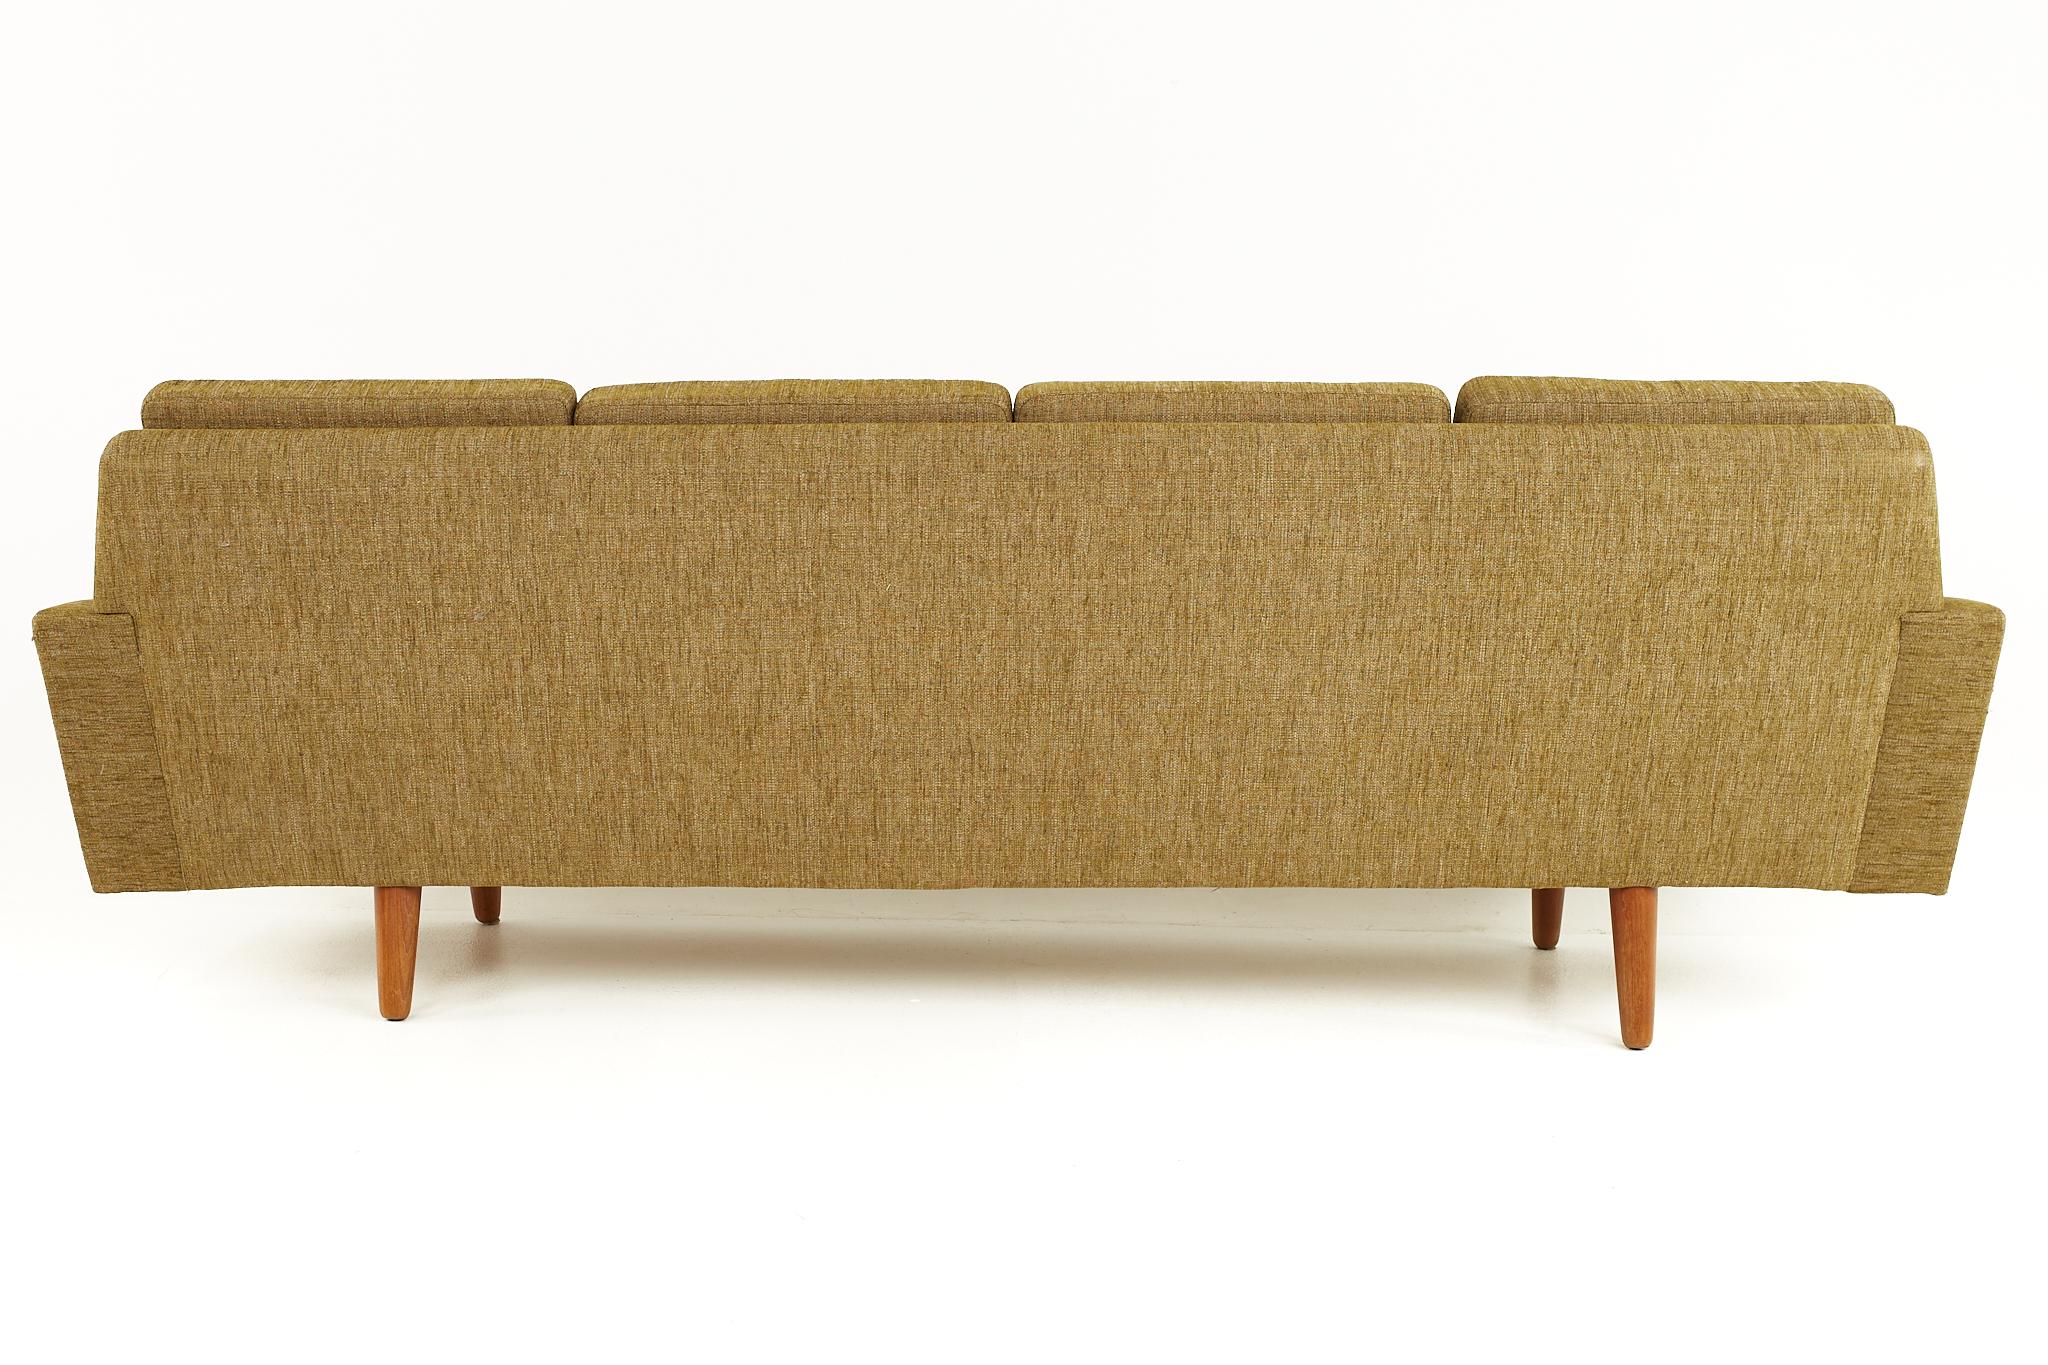 Illum Wikkelso Style Mid-Century Danish Teak Sofa 3